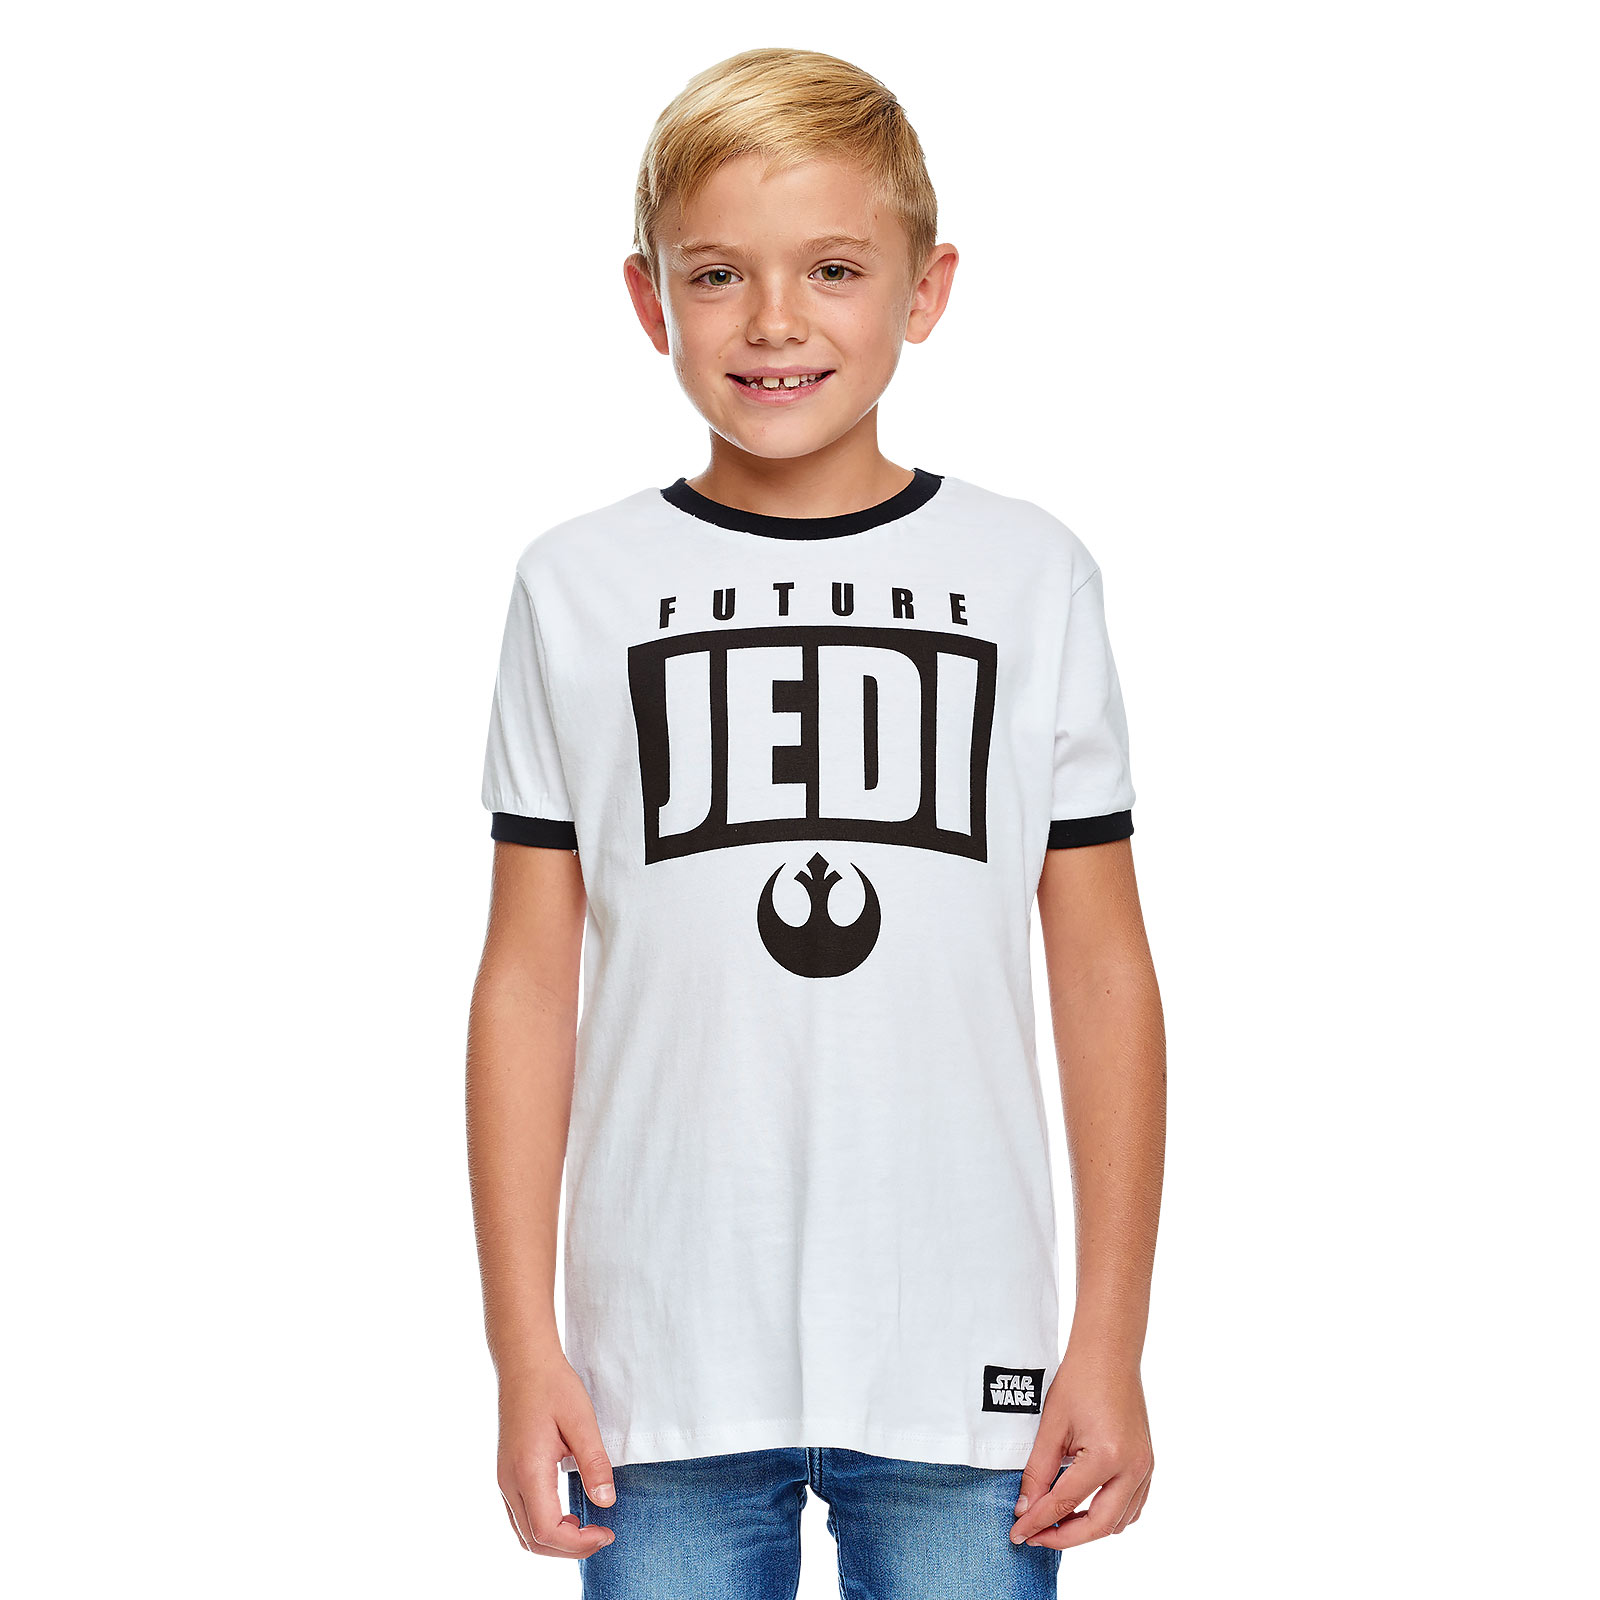 Star Wars - Future Jedi T-Shirt Kinder weiß